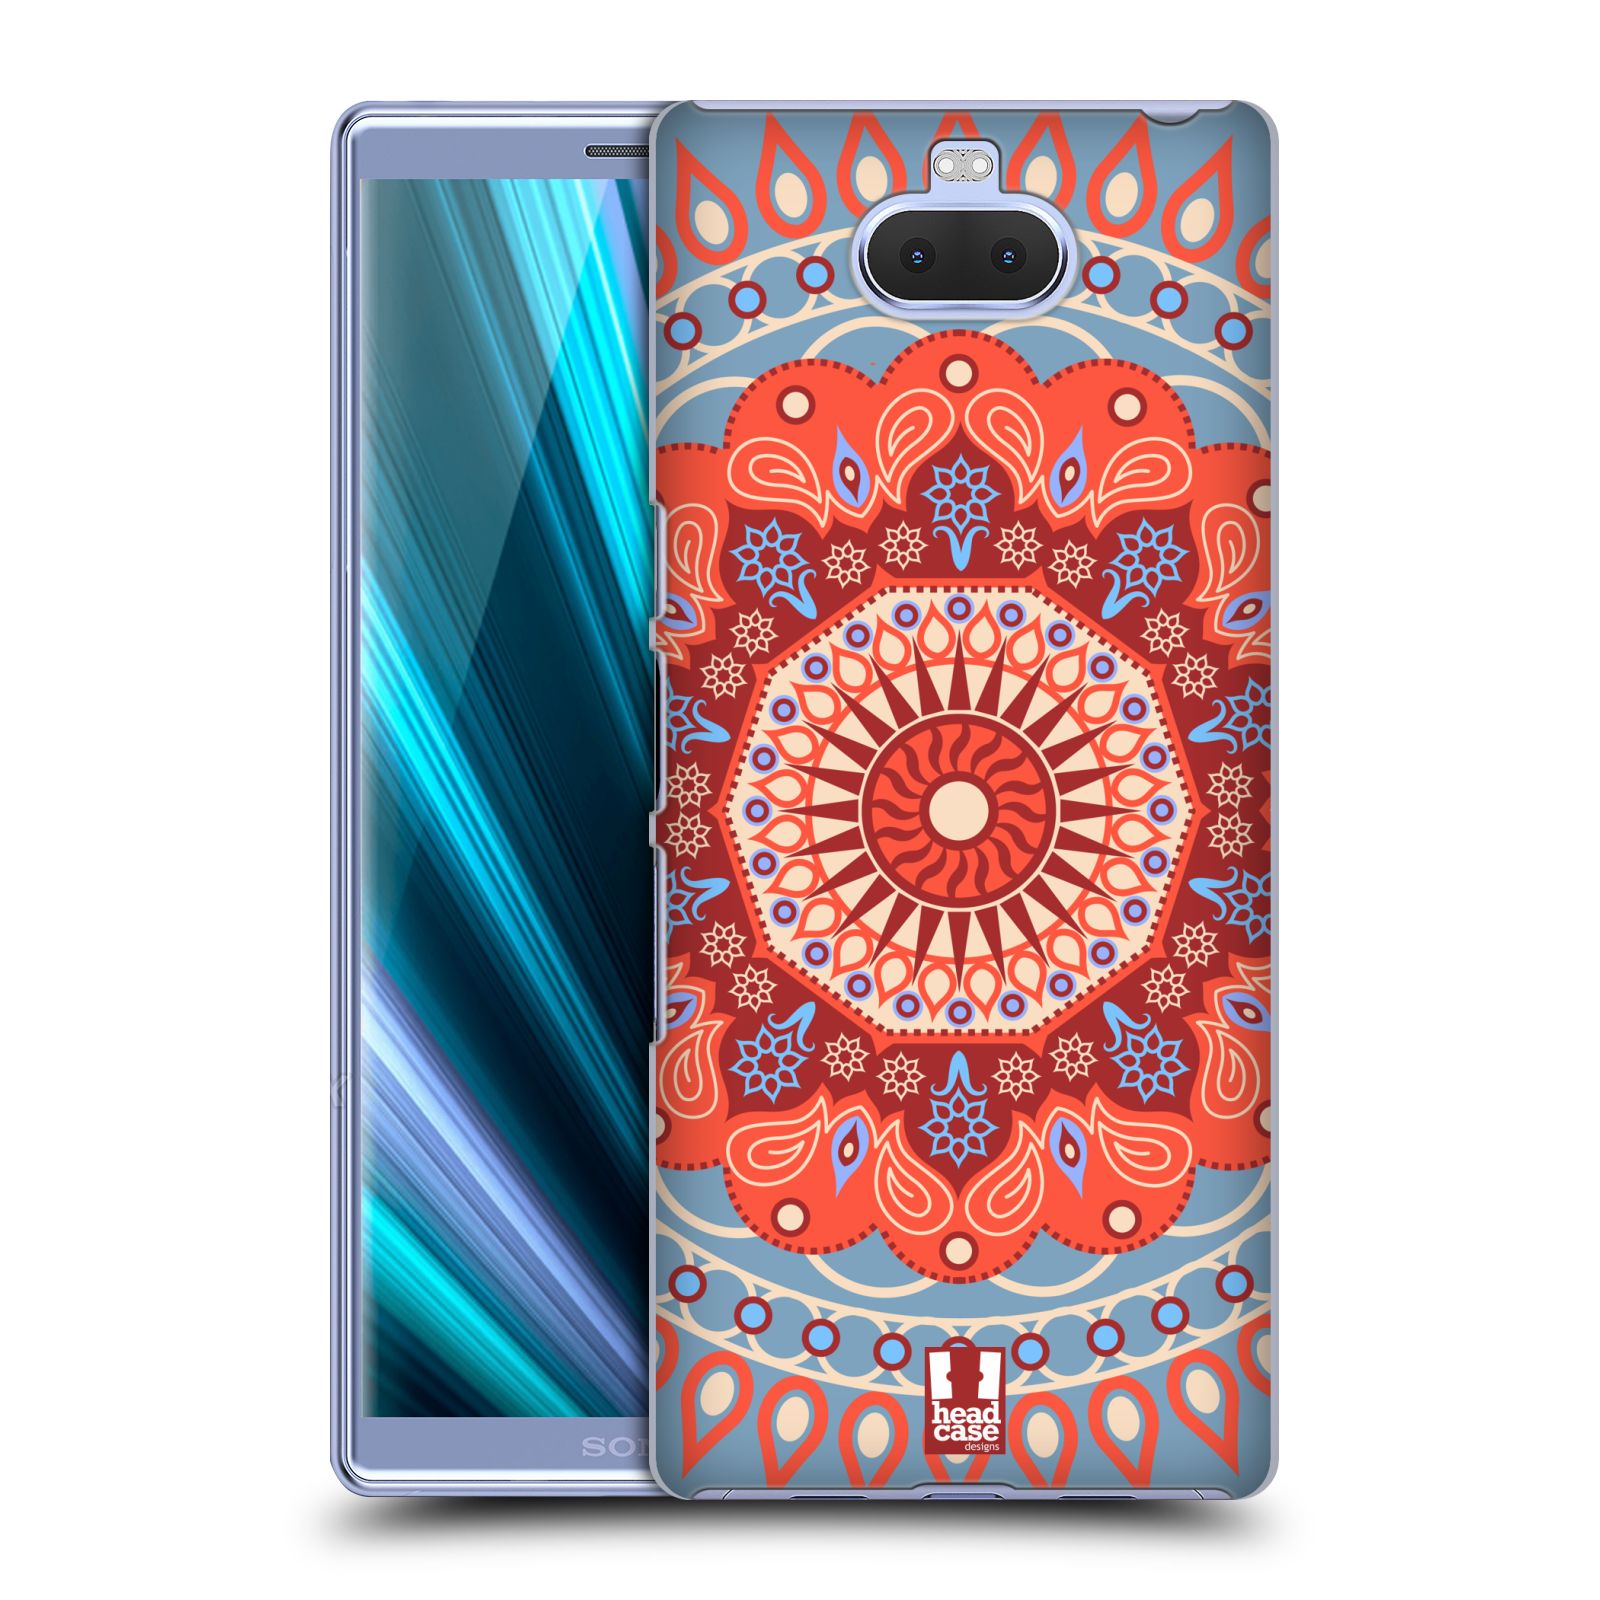 Pouzdro na mobil Sony Xperia 10 - Head Case - vzor Indie Mandala slunce barevný motiv ČERVENÁ A MODRÁ